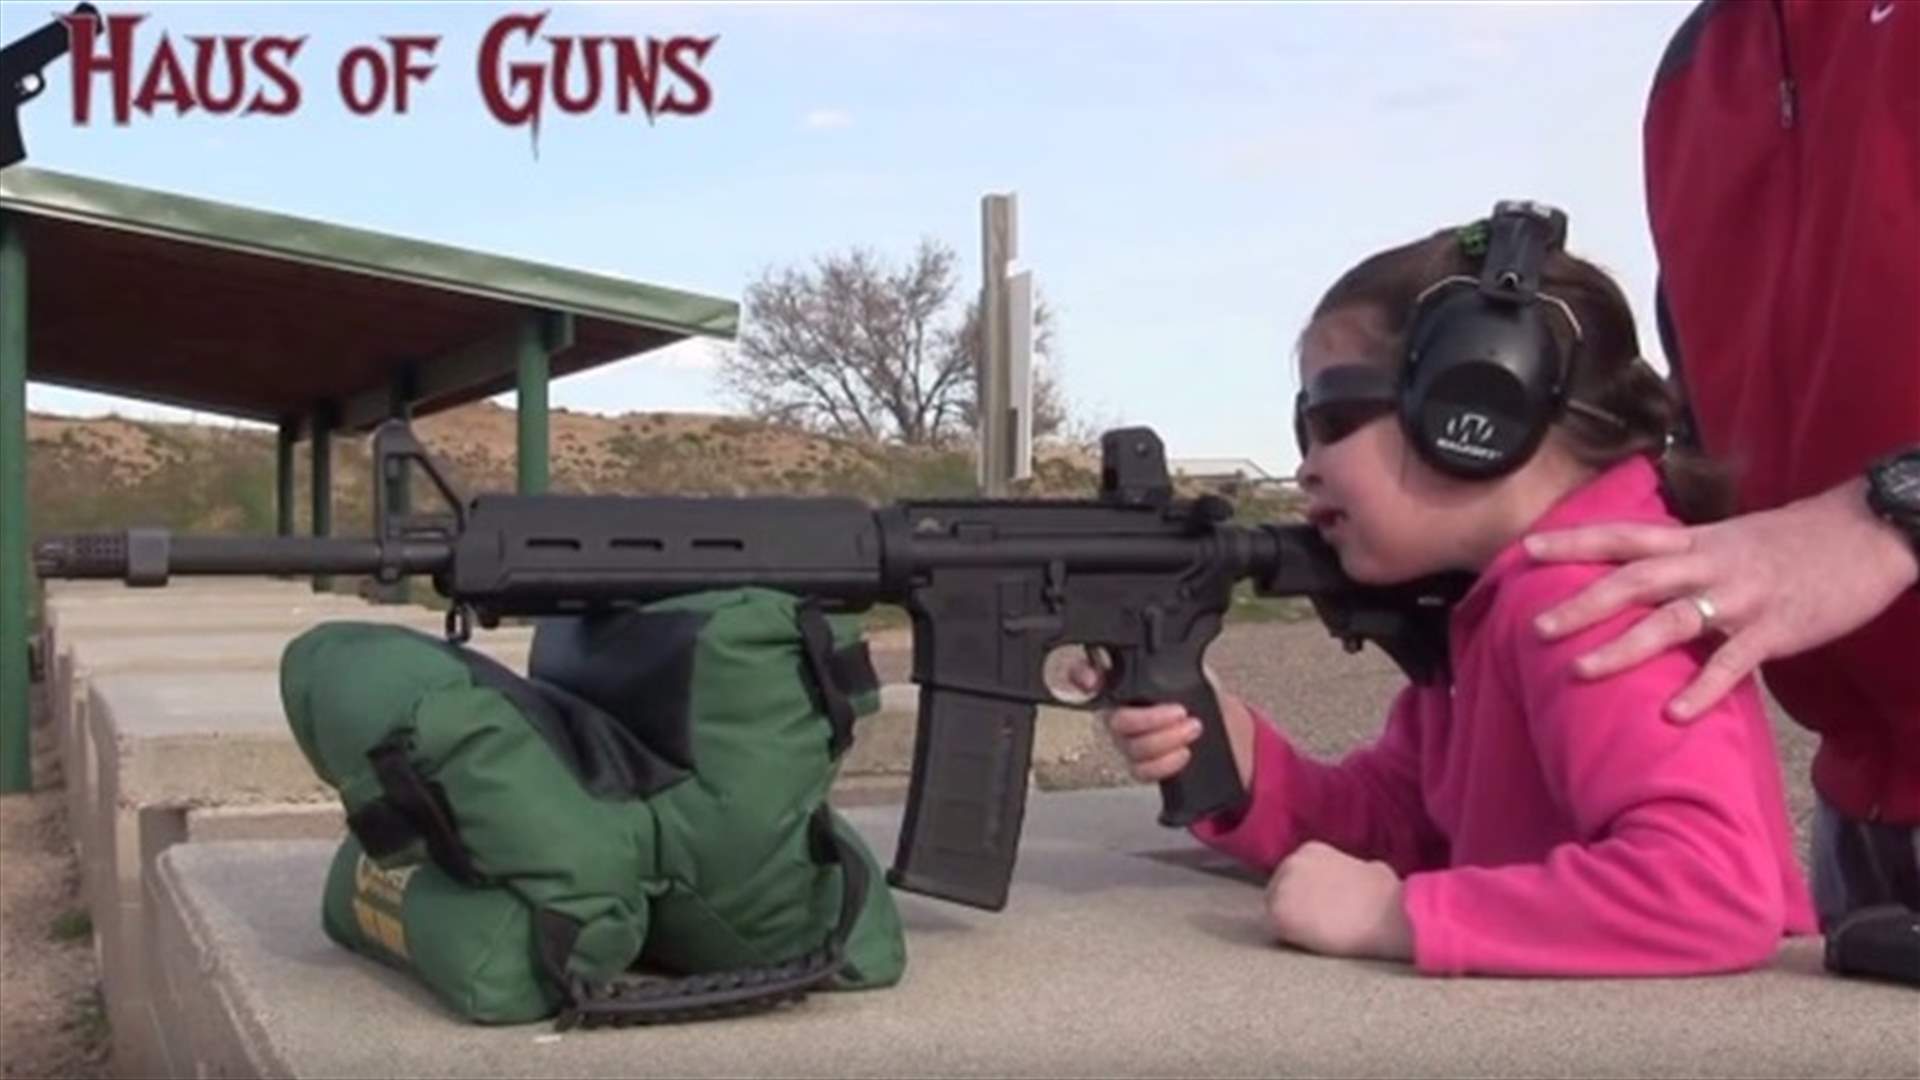 بالفيديو: أبّ يعلّم طفلة كيفية استخدام السلاح الحربي